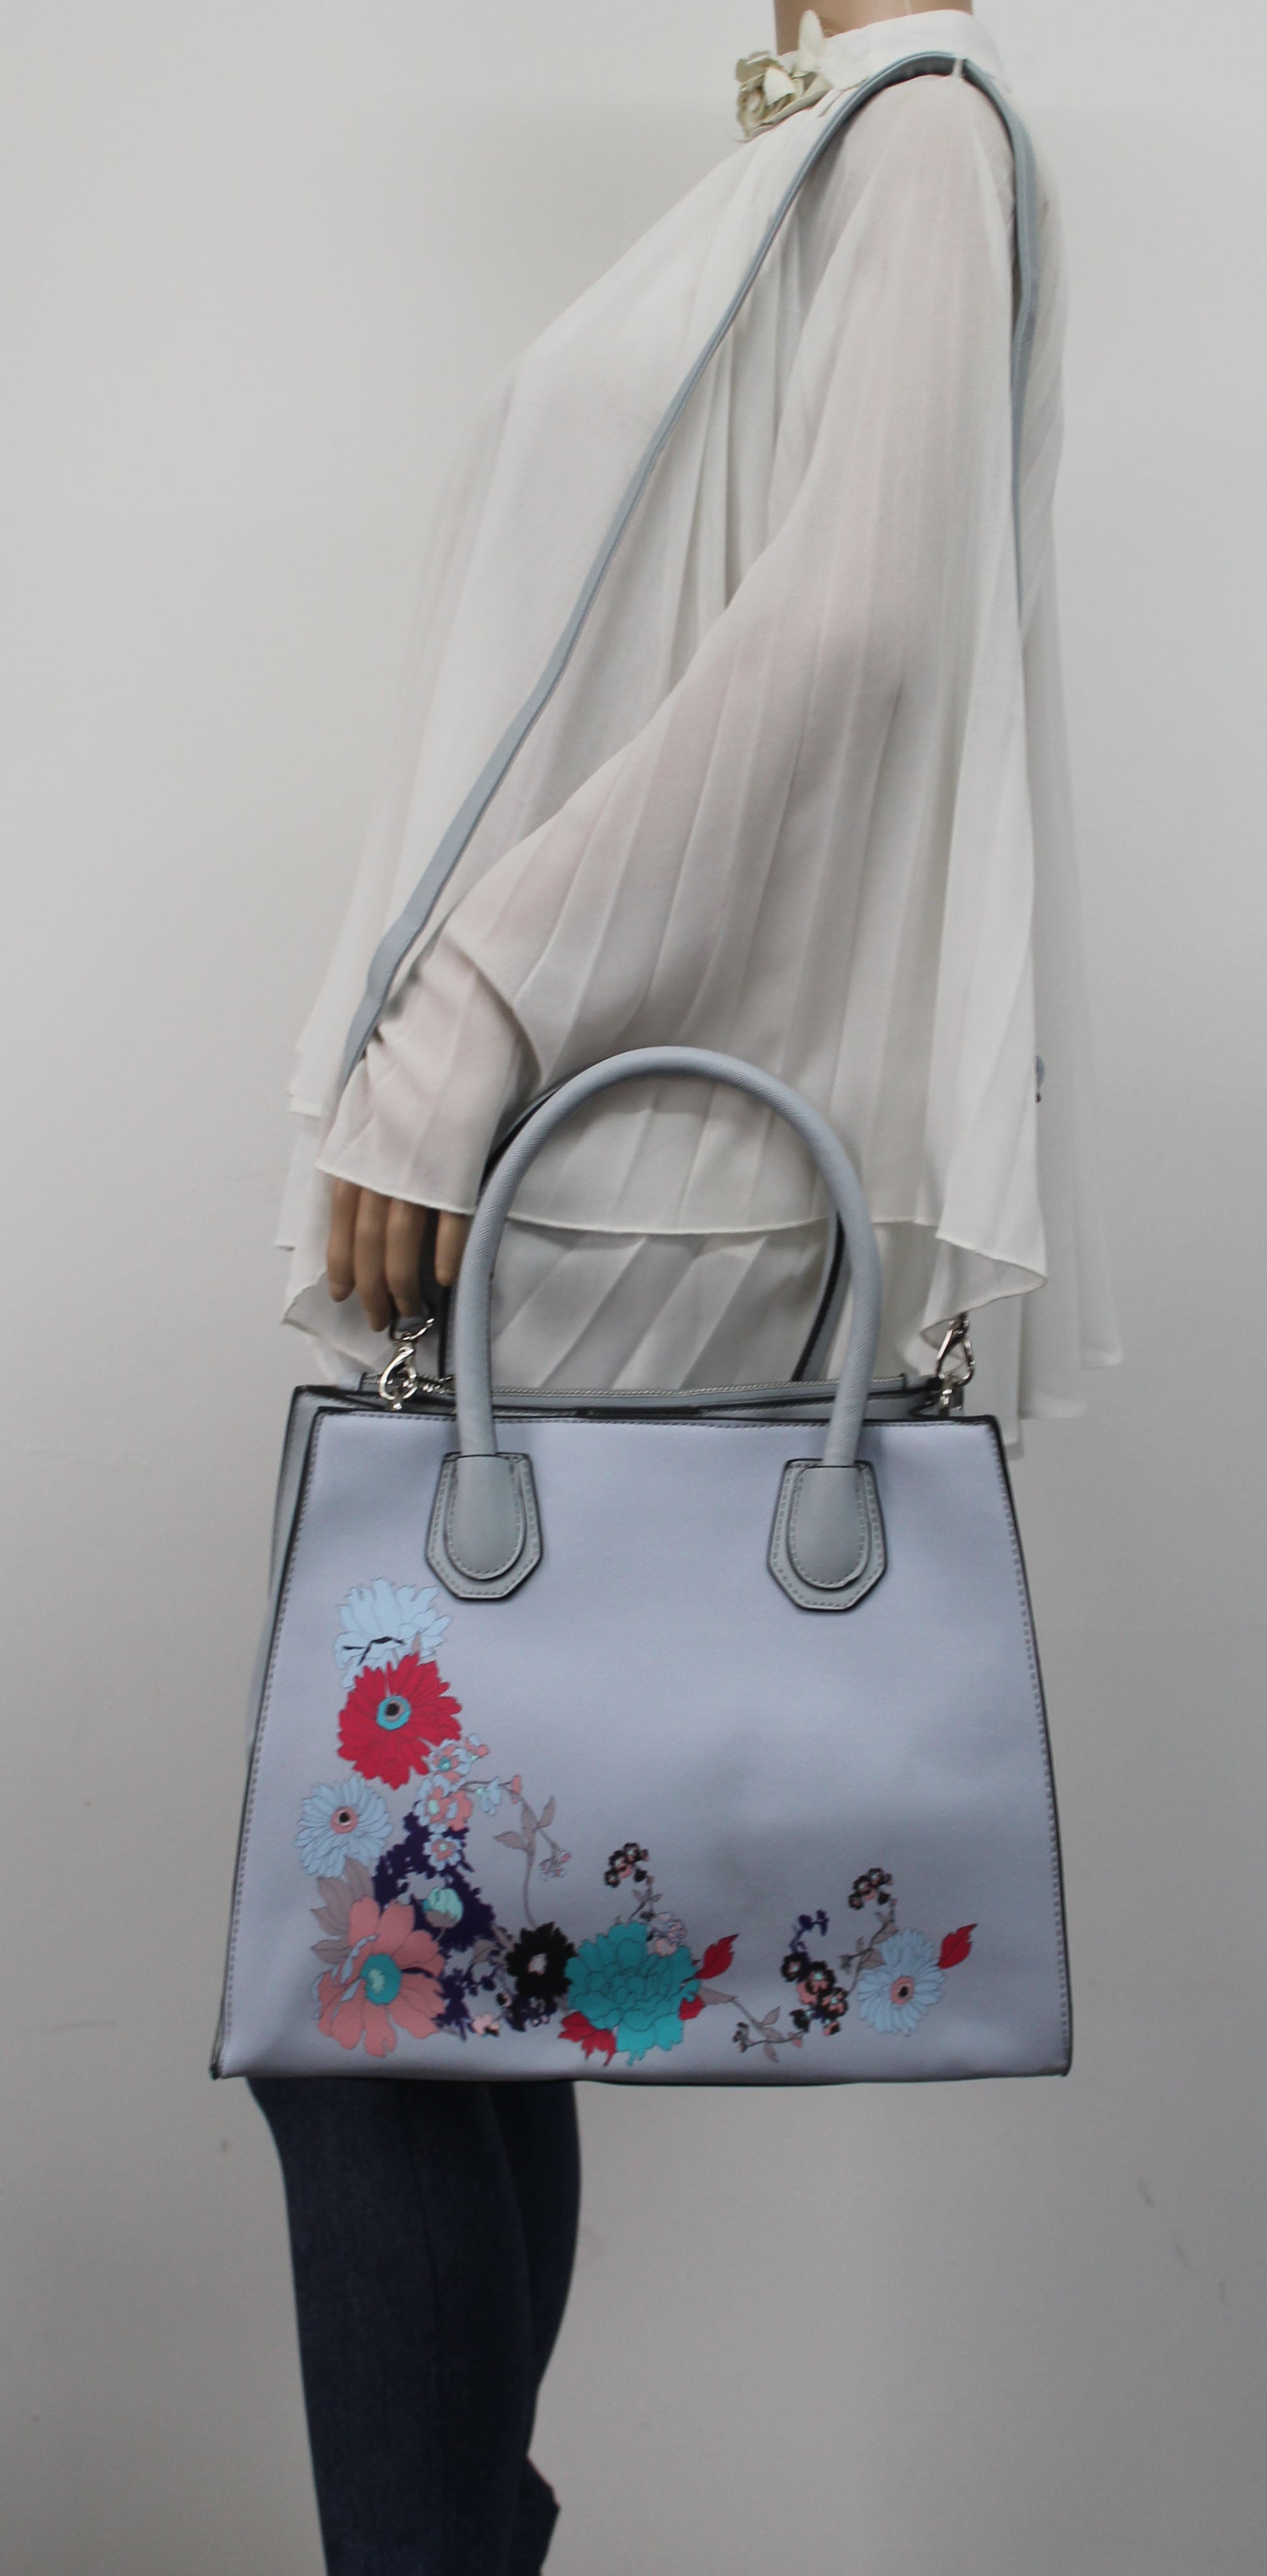 Hanna Floral Handbag Ash GreyBeautiful Cute Animal Faux Leather Clutch Bag Handles Strap Summer School